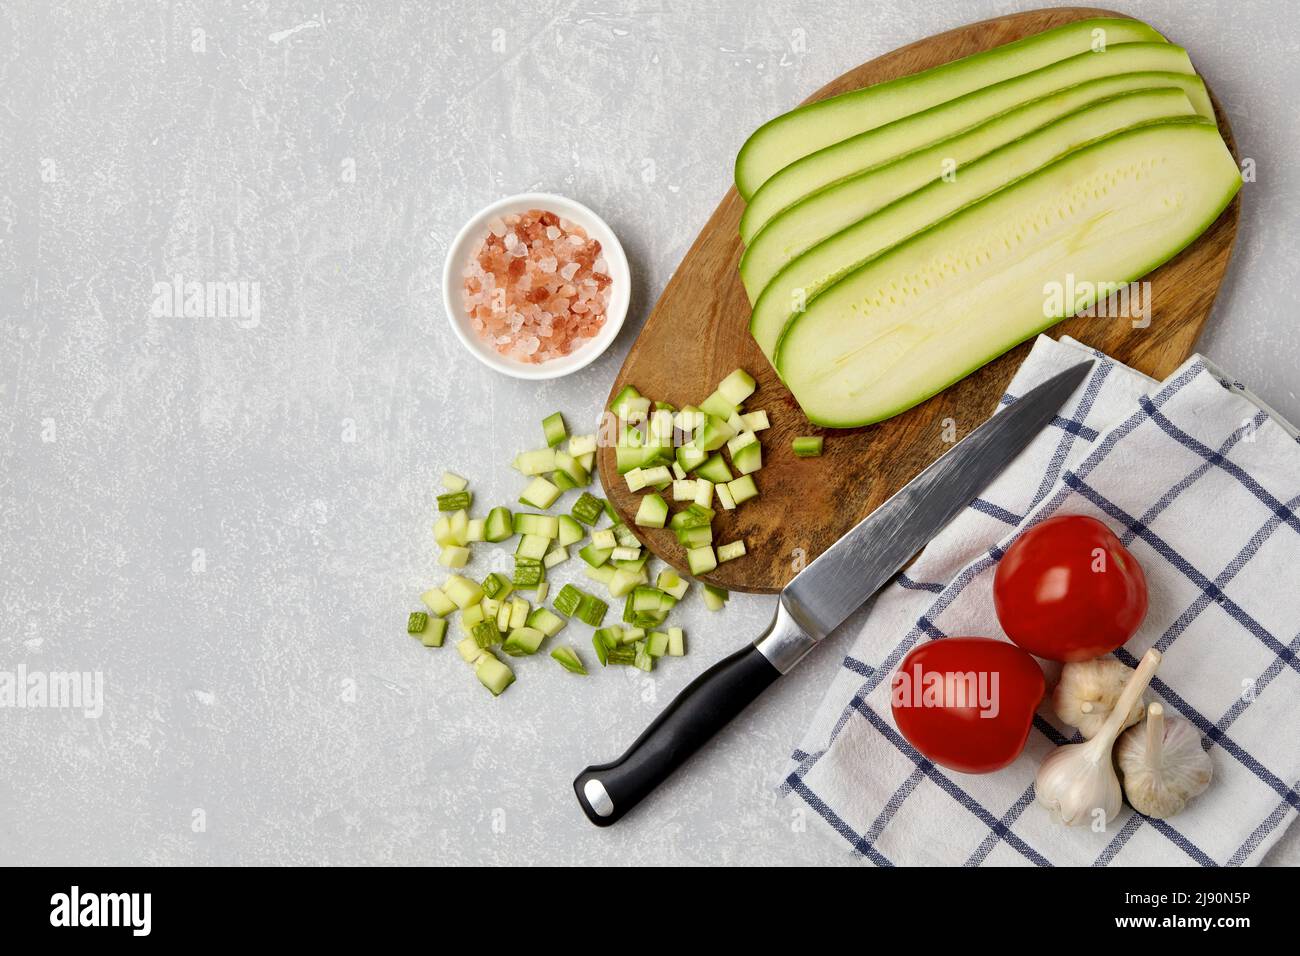 Affettare le zucchine di zucchine su un tagliere di legno, coltello, pomodori, aglio, sale rosa e tovagliolo su un tavolo in cemento leggero. Vista dall'alto piatta Foto Stock